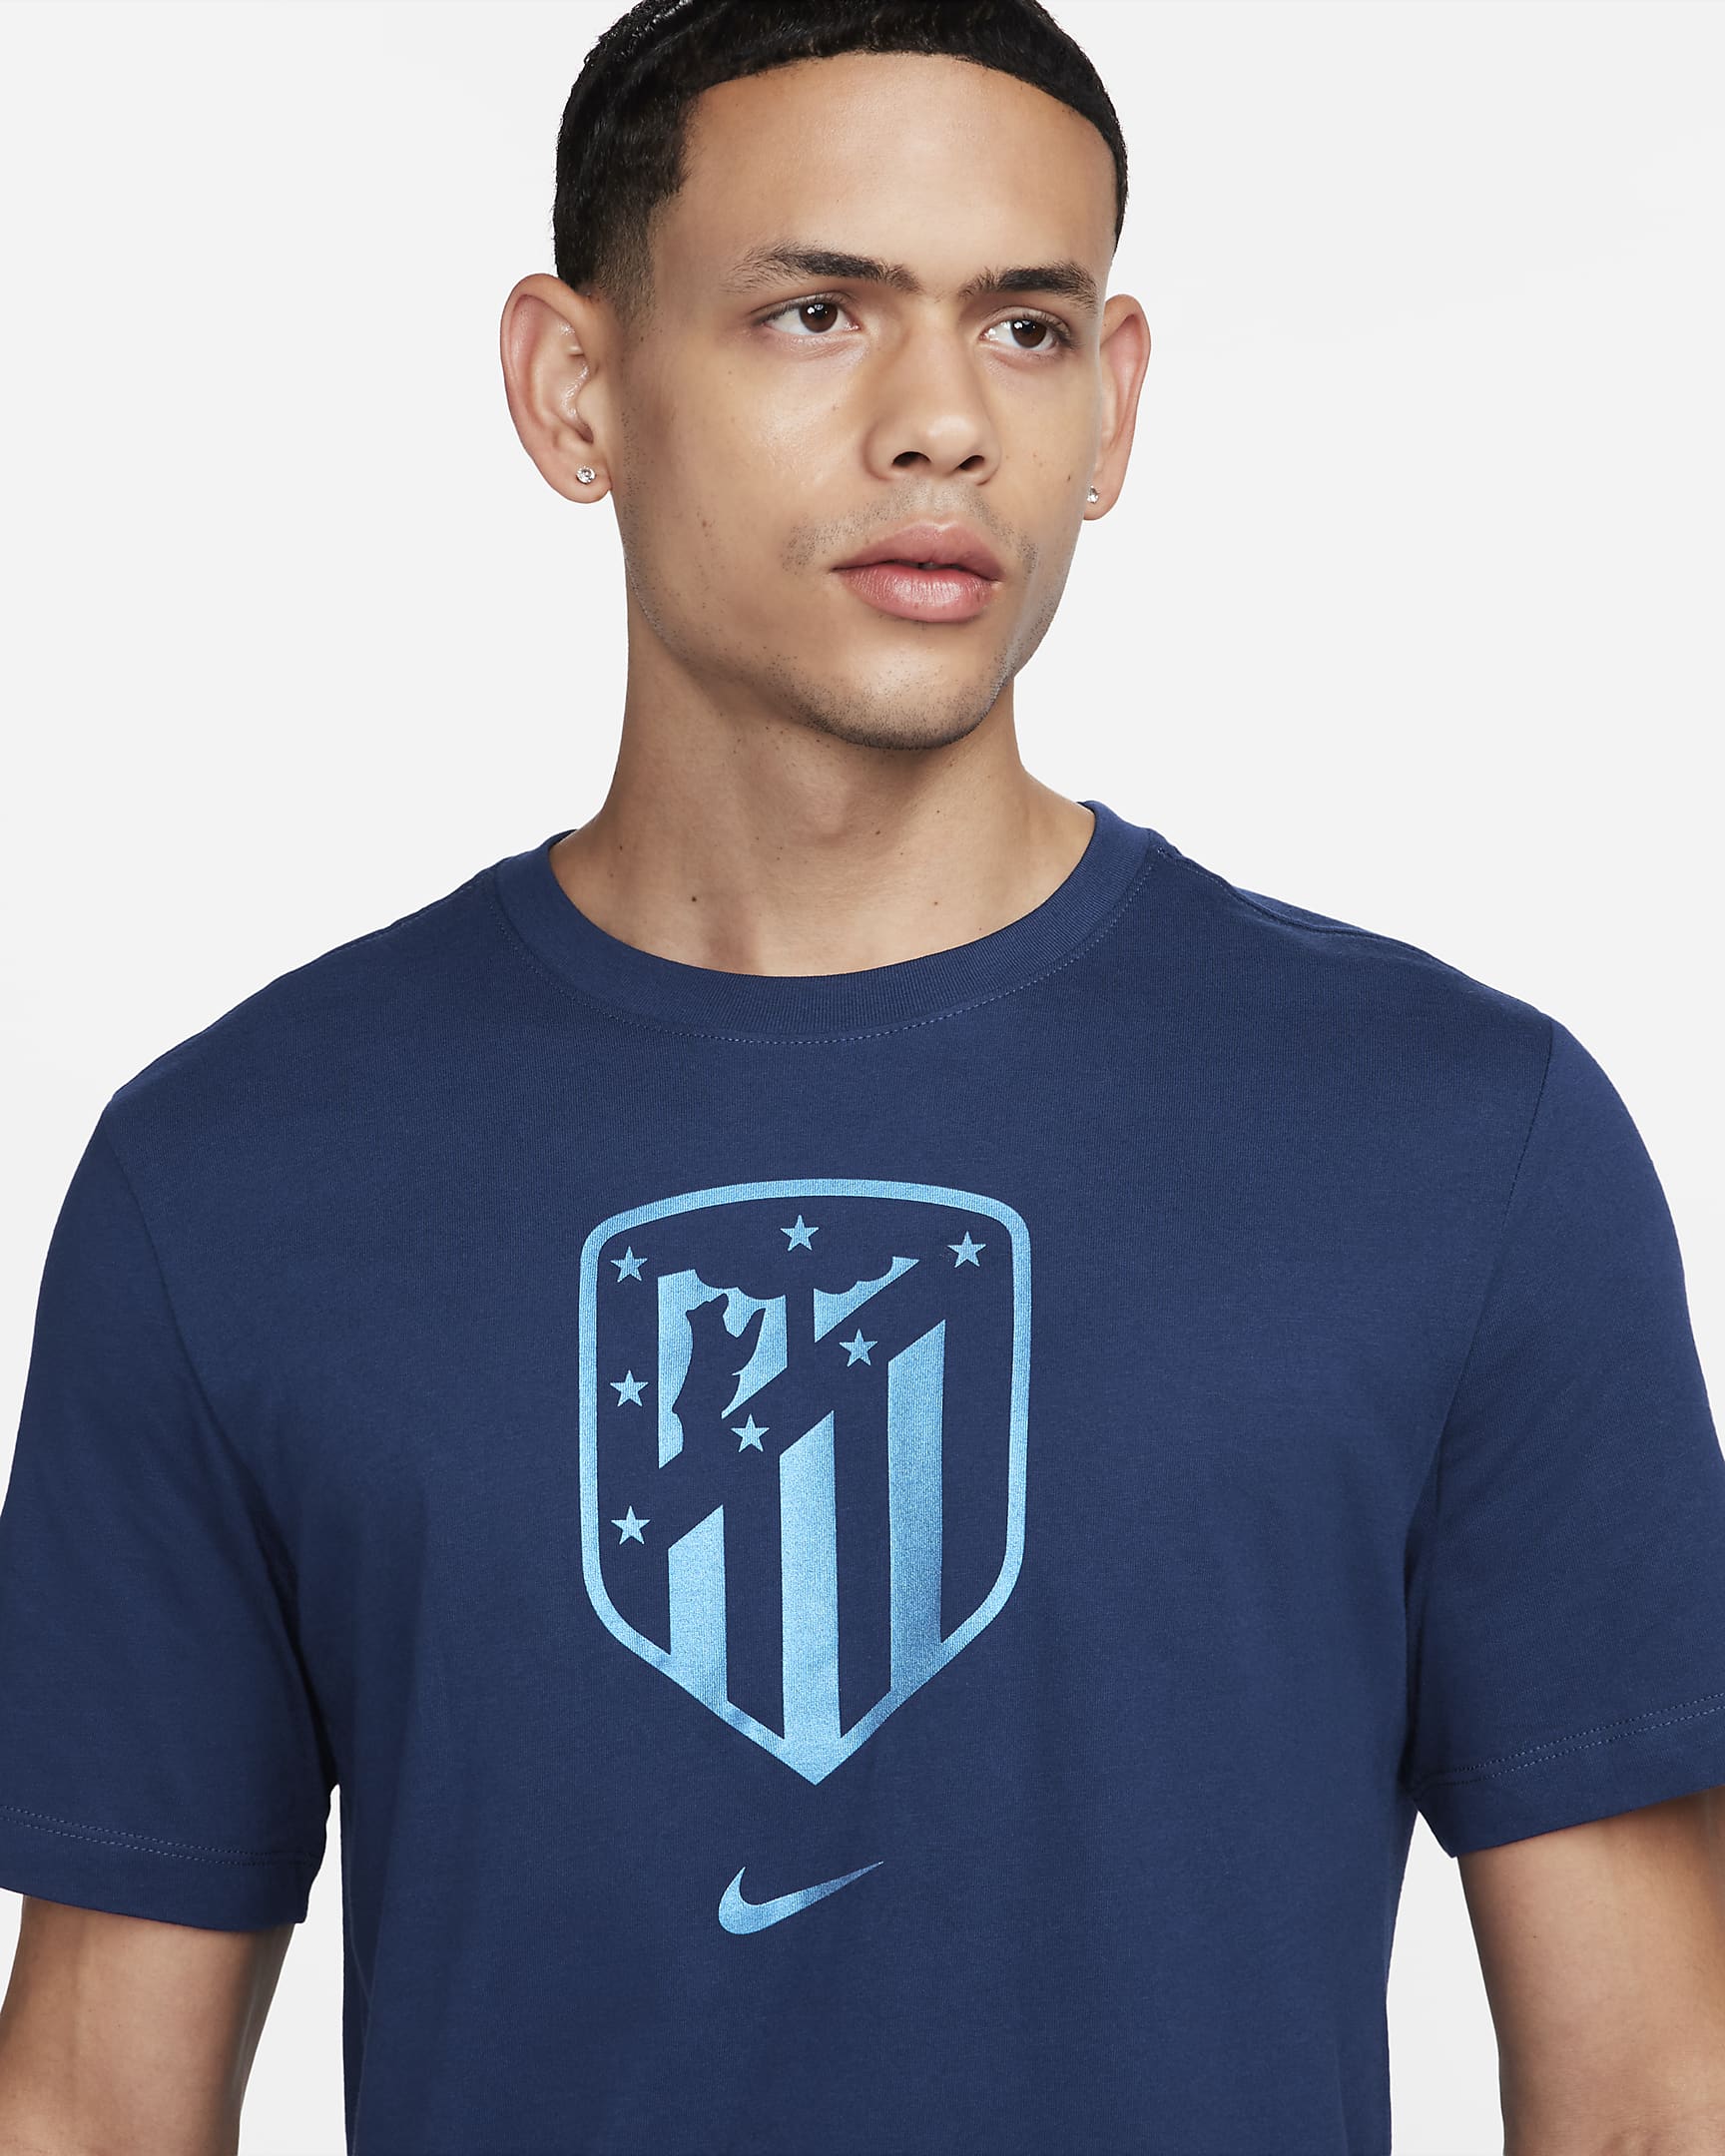 Playera de fútbol para hombre Atlético Madrid Crest. Nike.com